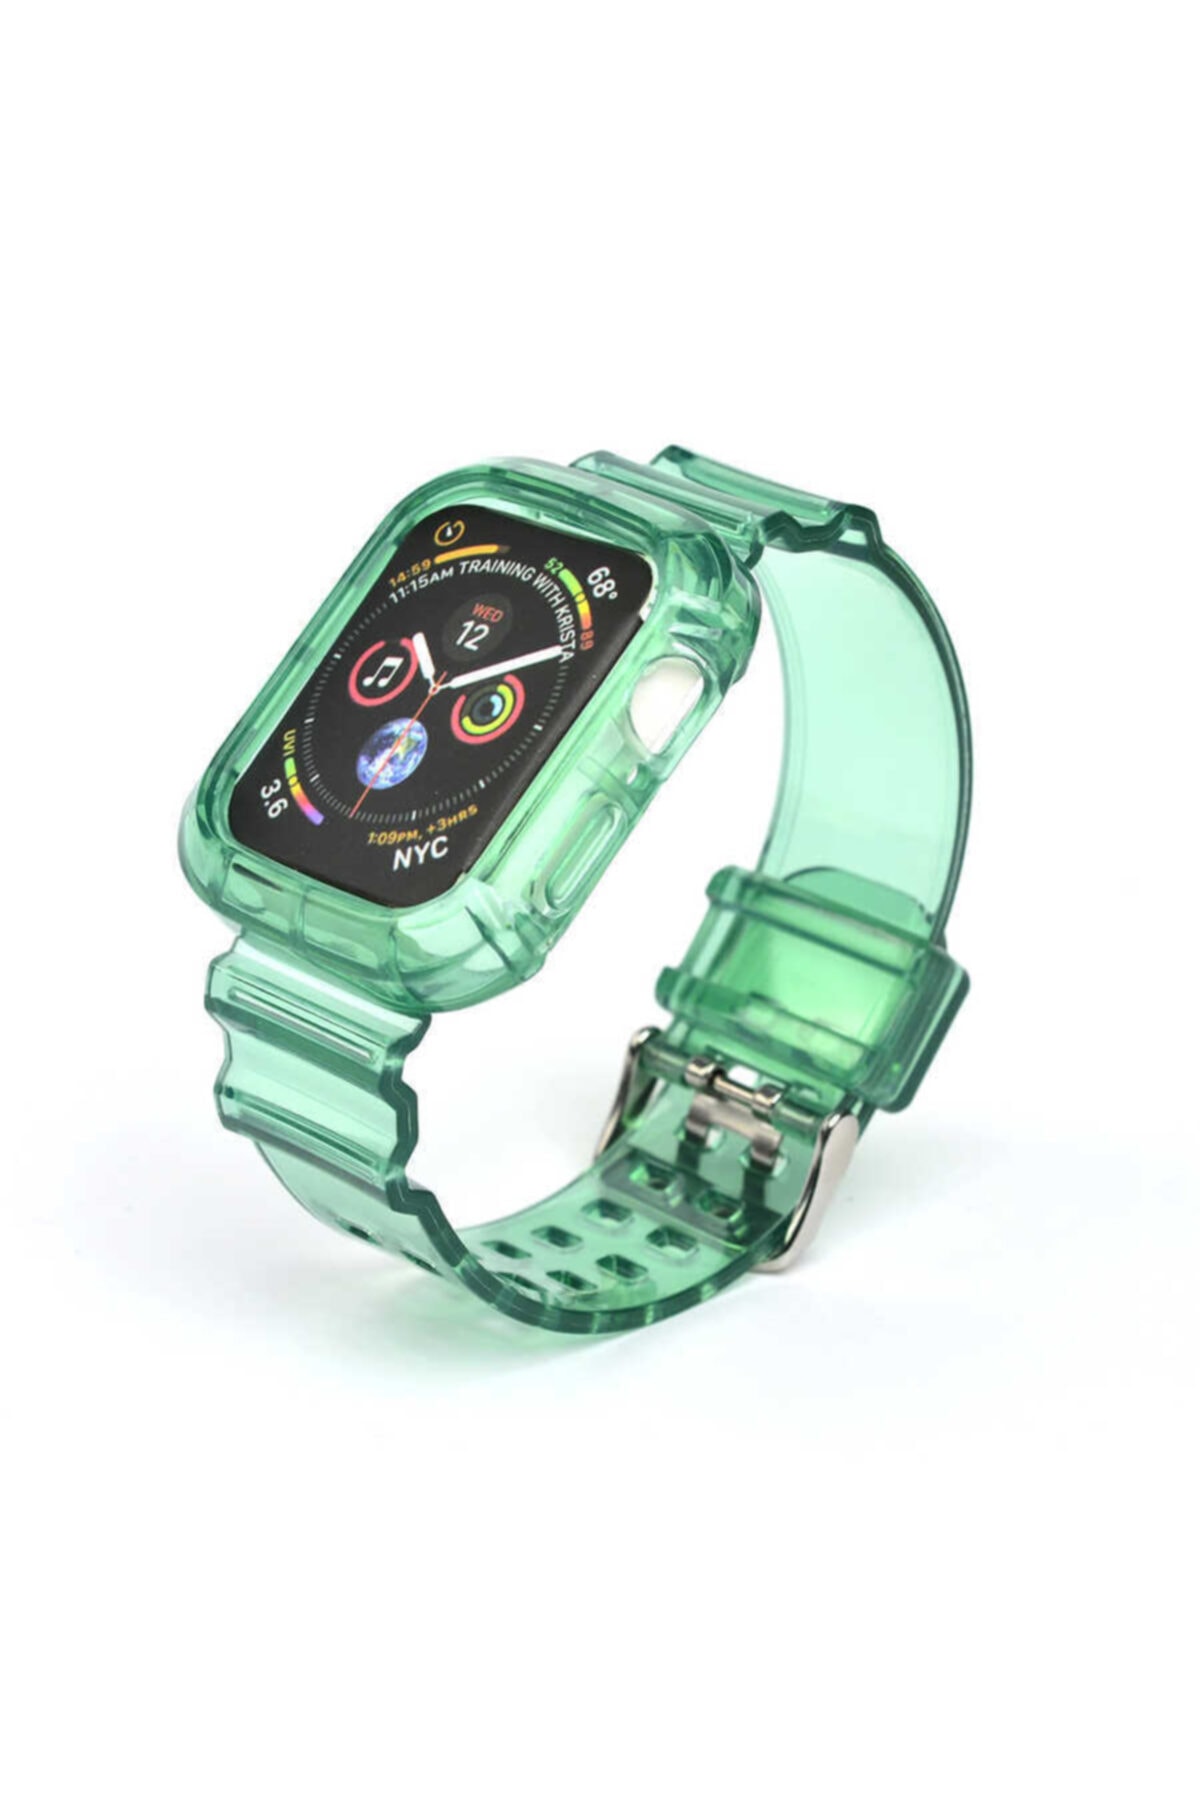 Kayış/kordon Ve Kasa Koruyucu Apple Watch Seri 2/3/4/5/6 40mm Yeşil (SAAT DEĞİLDİR)